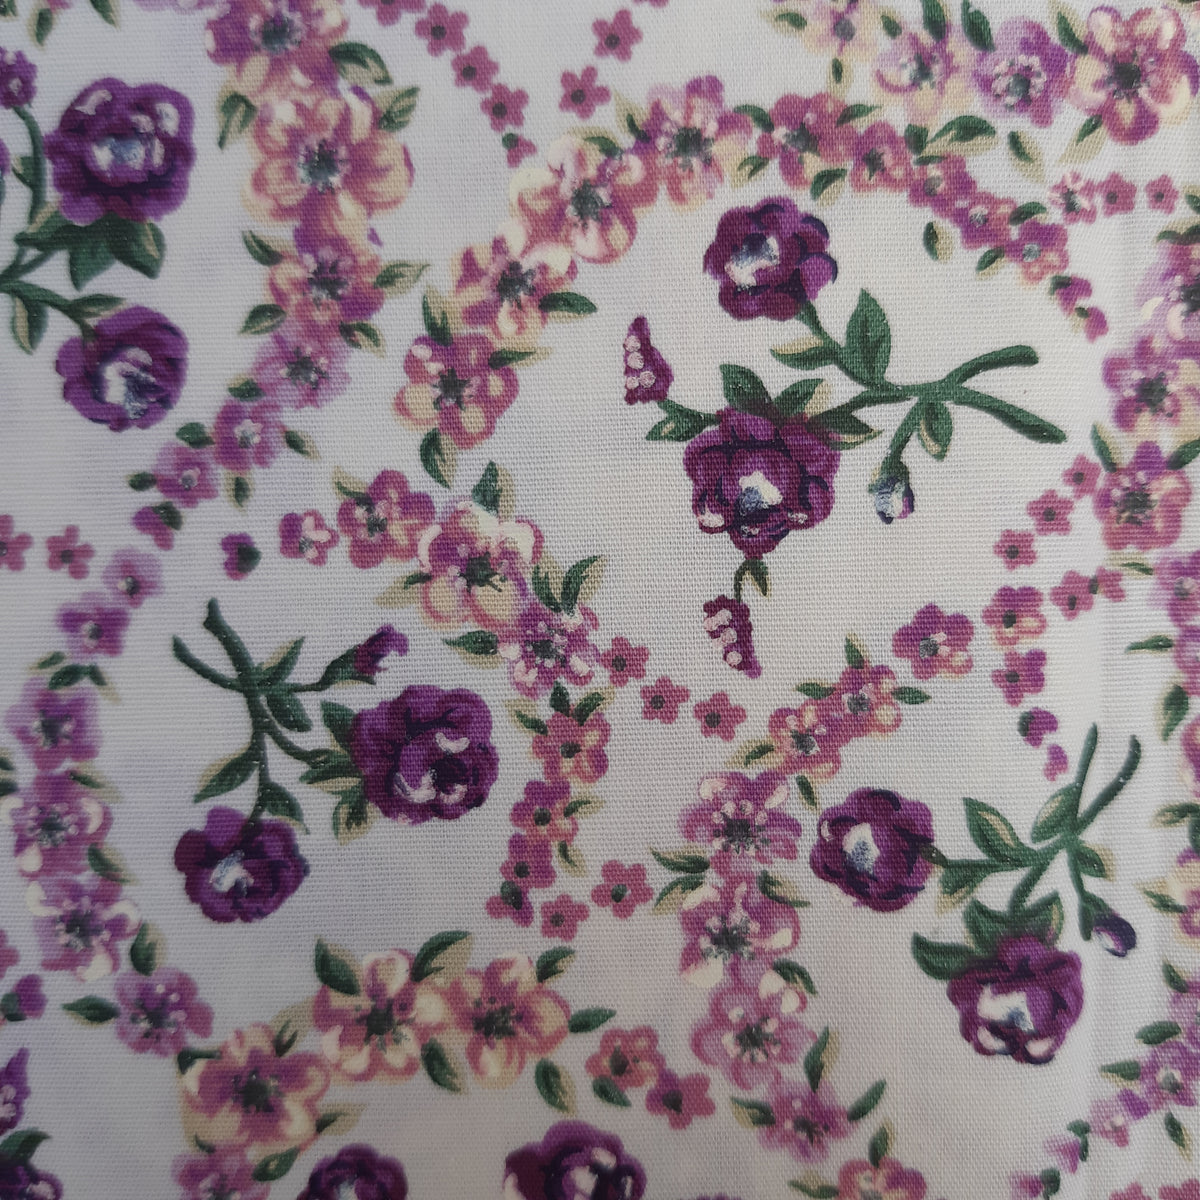 masque protection coton elastique 2 plis fabrication artisanale france renaissance liberty fleurs violet